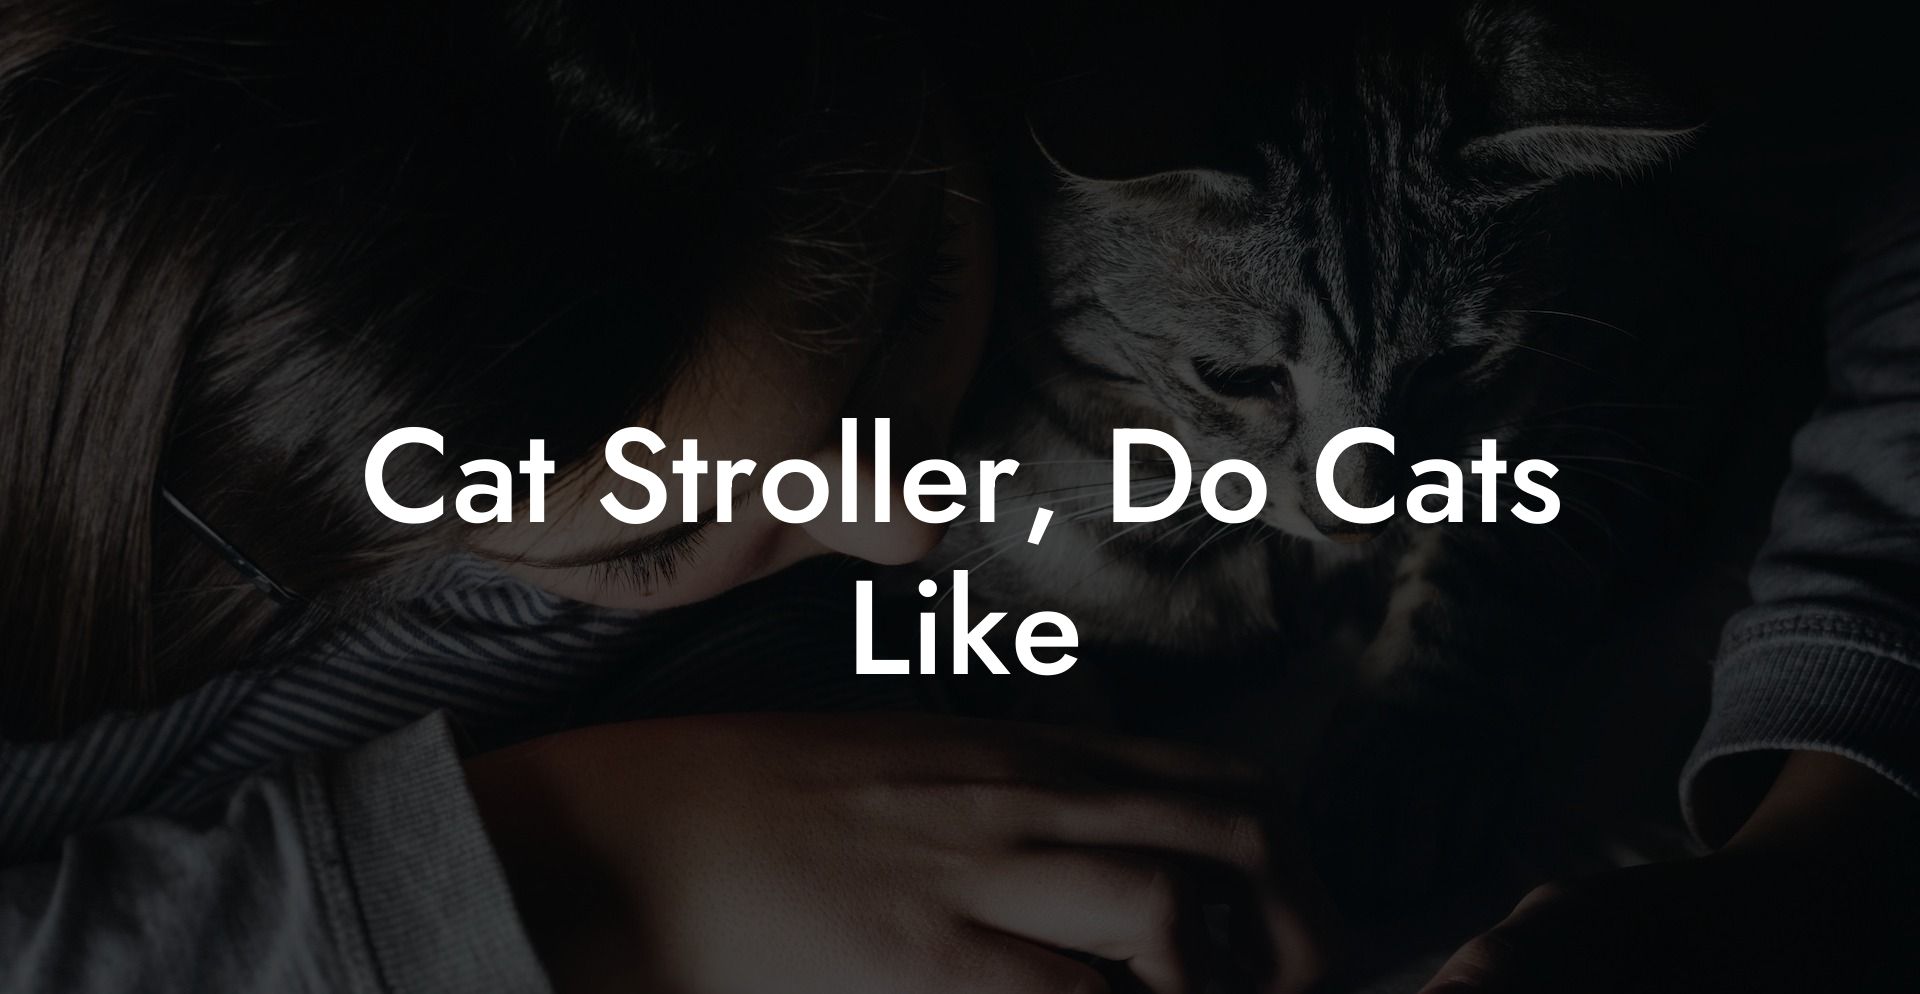 Cat Stroller, Do Cats Like